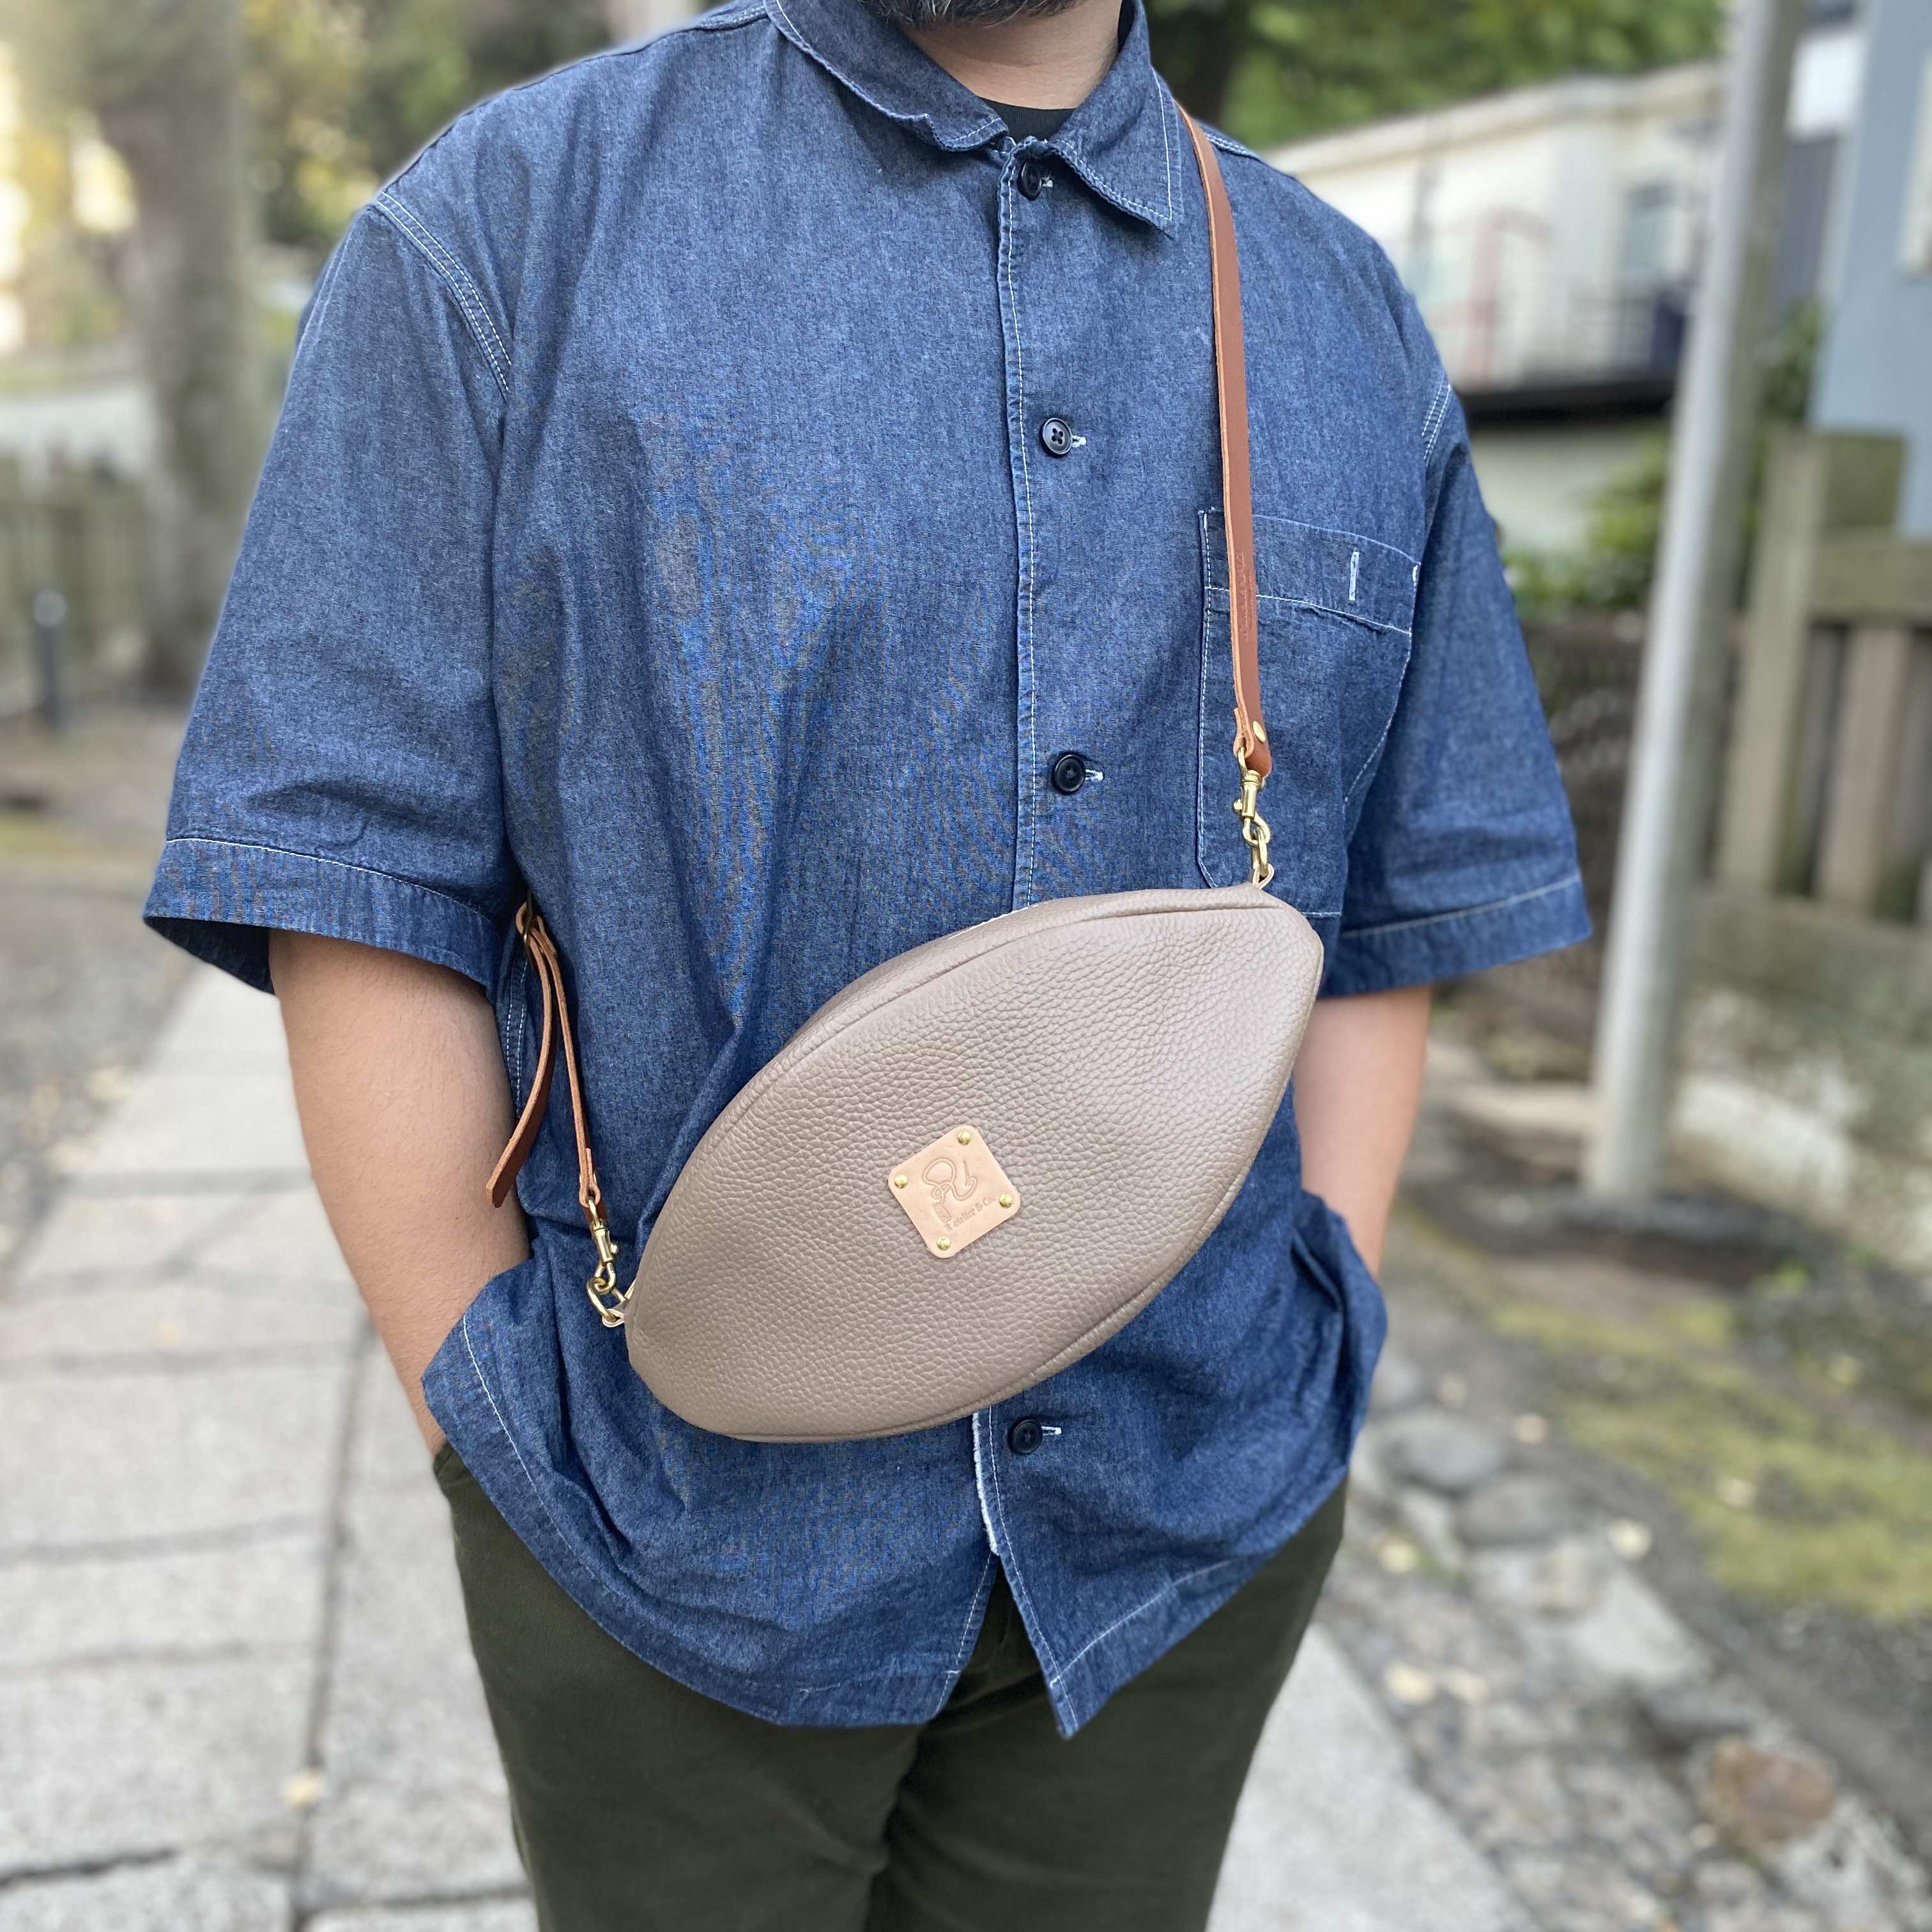 Hラグビーボールバッグ」姫路レザー 日本製 バッグ ショルダーバッグ